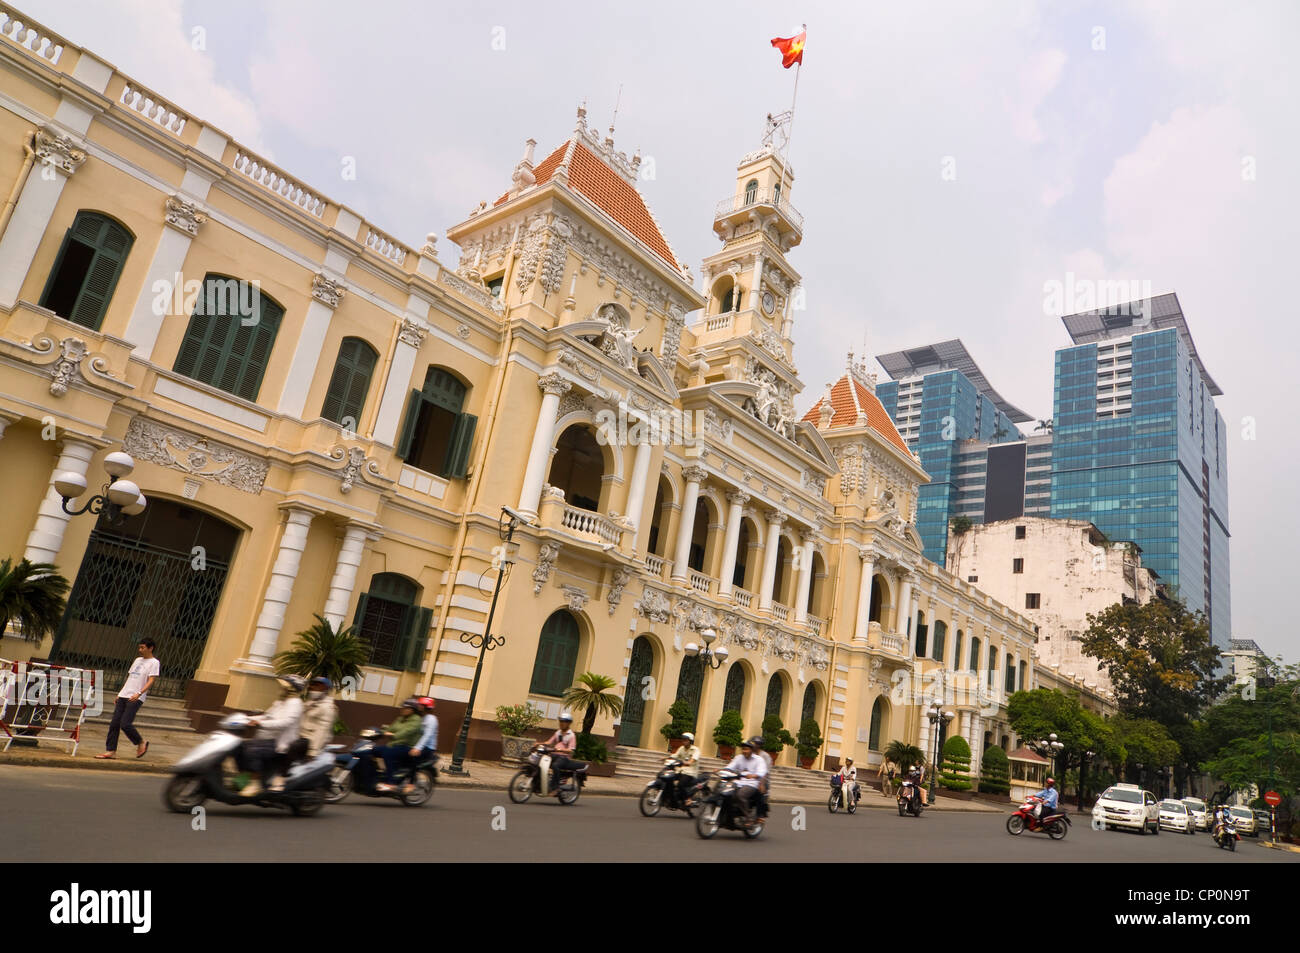 Horizontal wide angle of City Hall or Hôtel de Ville de Saigon, Trụ sở Ủy ban Nhân dân Thành phố Hồ Chí Minh in Ho Chi Minh city Stock Photo